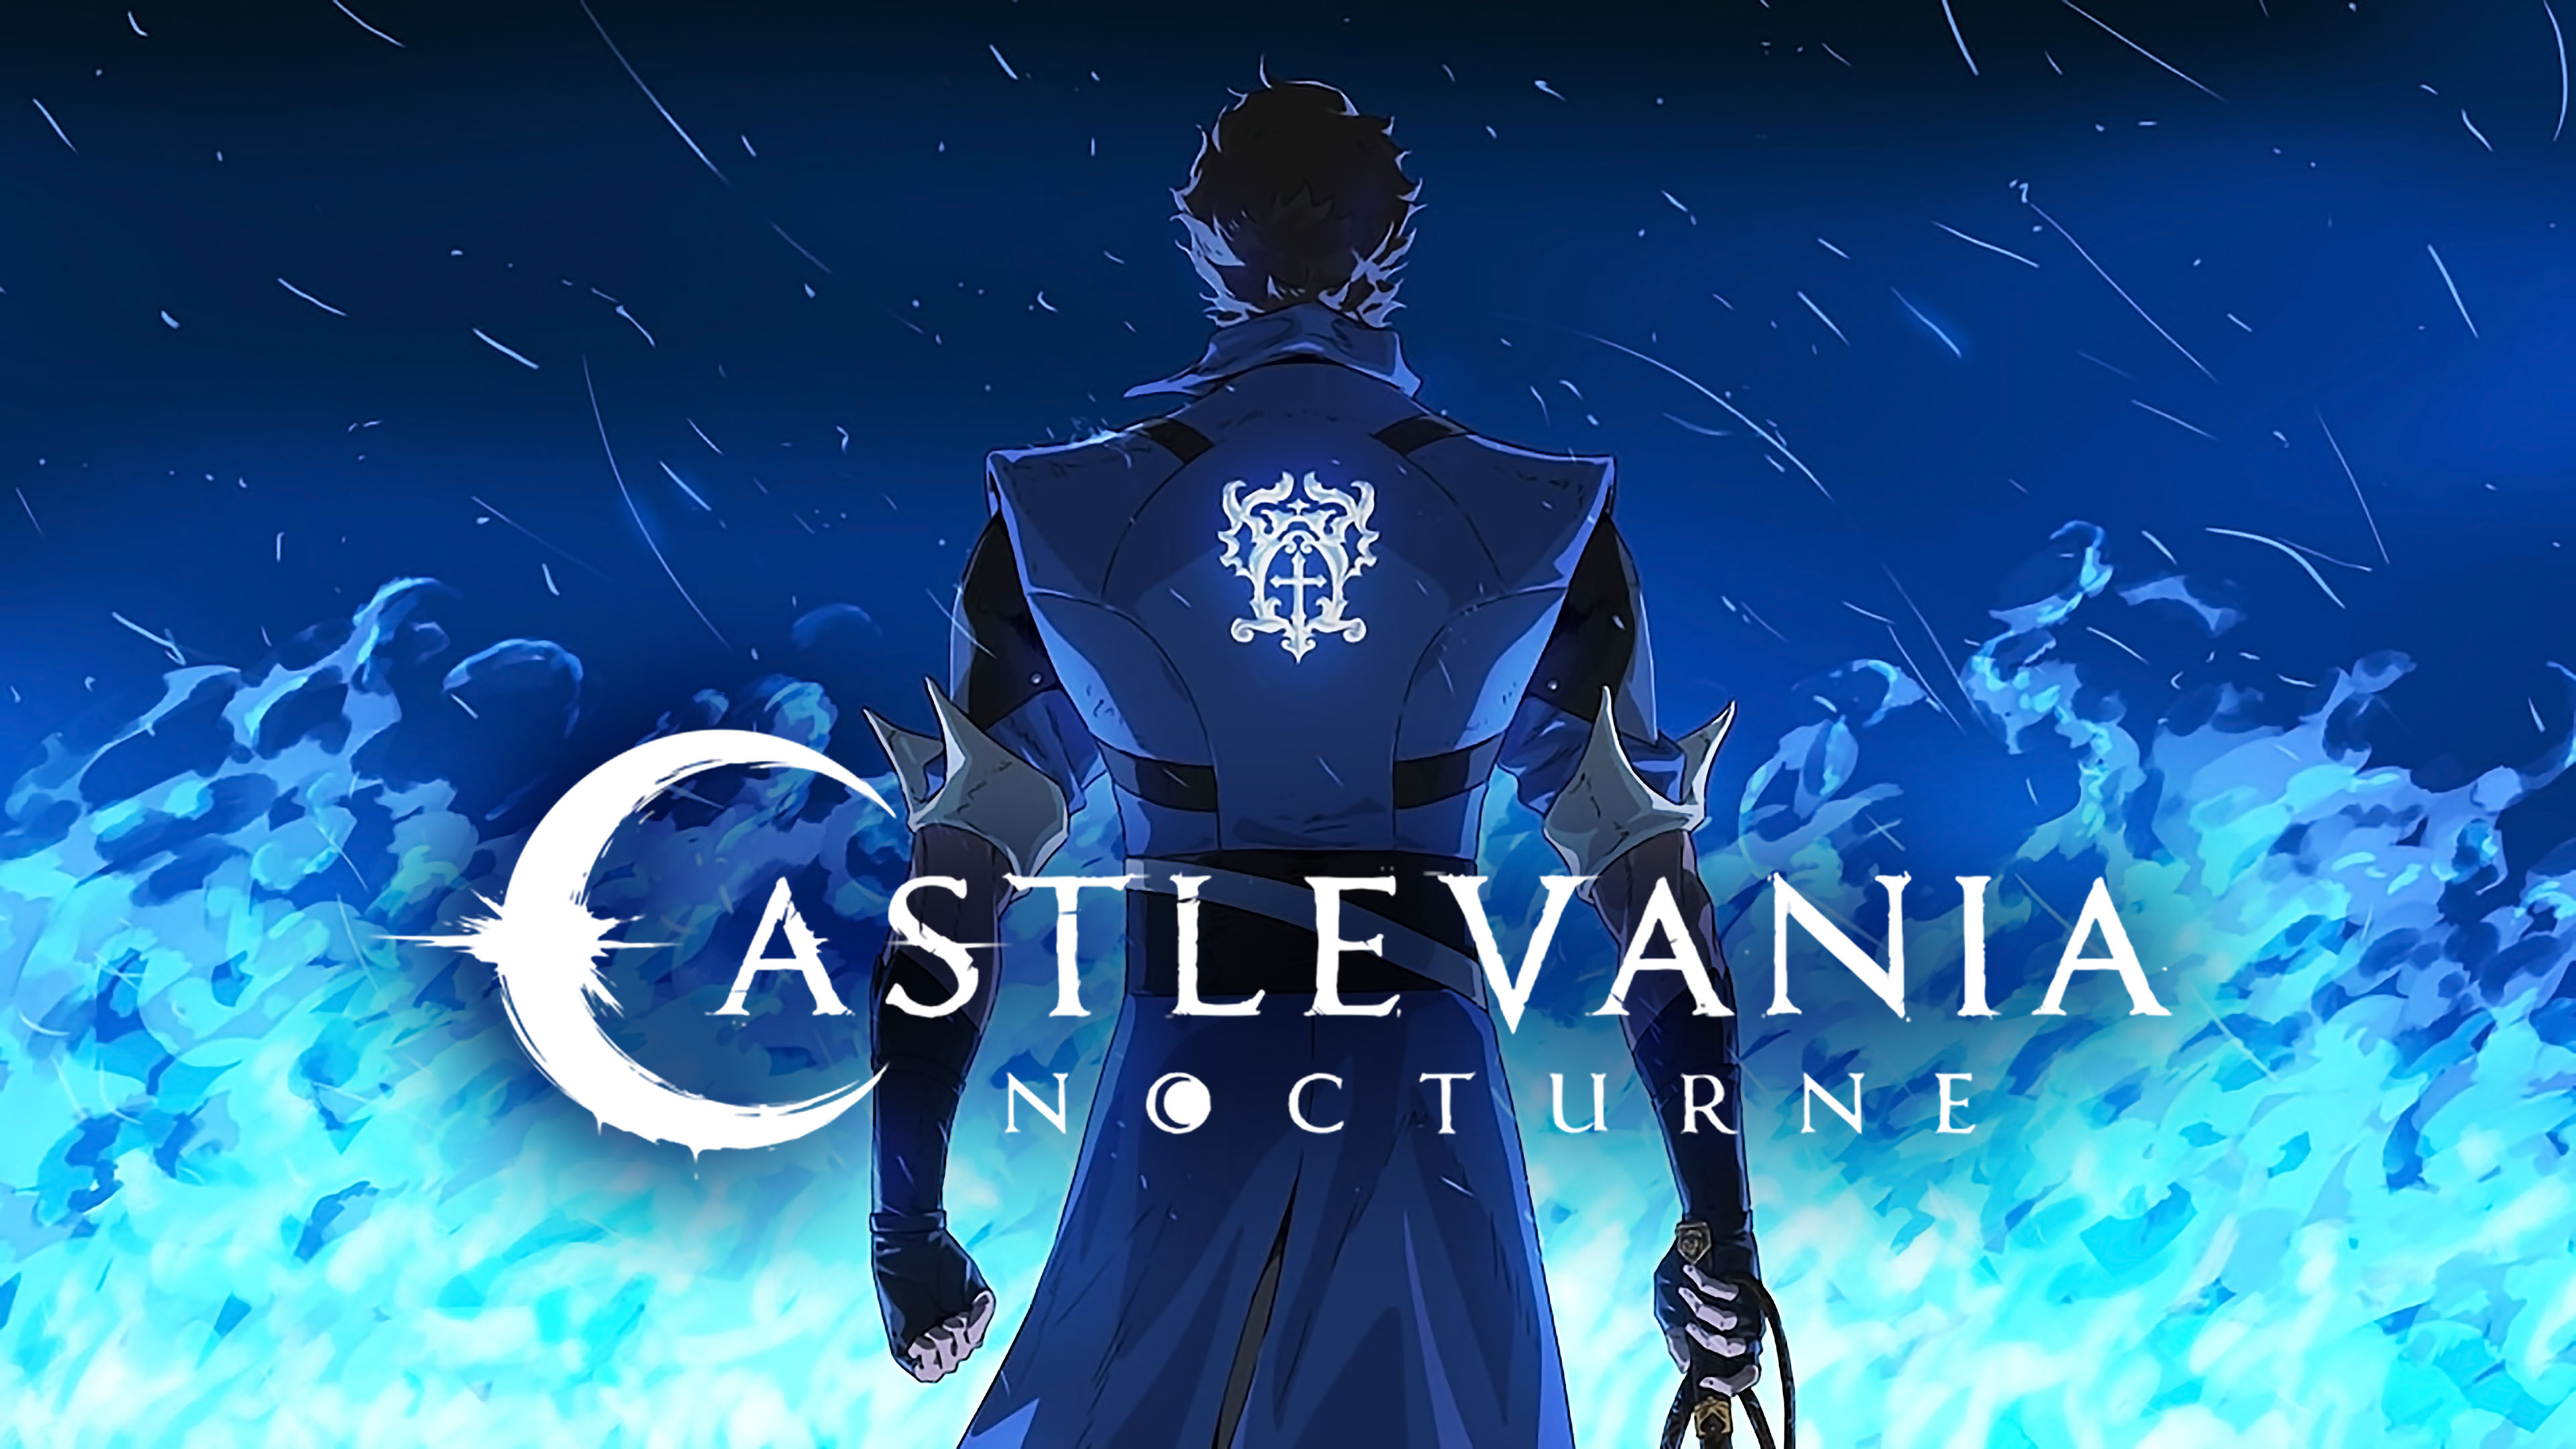 La segunda temporada de Castlevania: Nocturne ya está en desarrollo